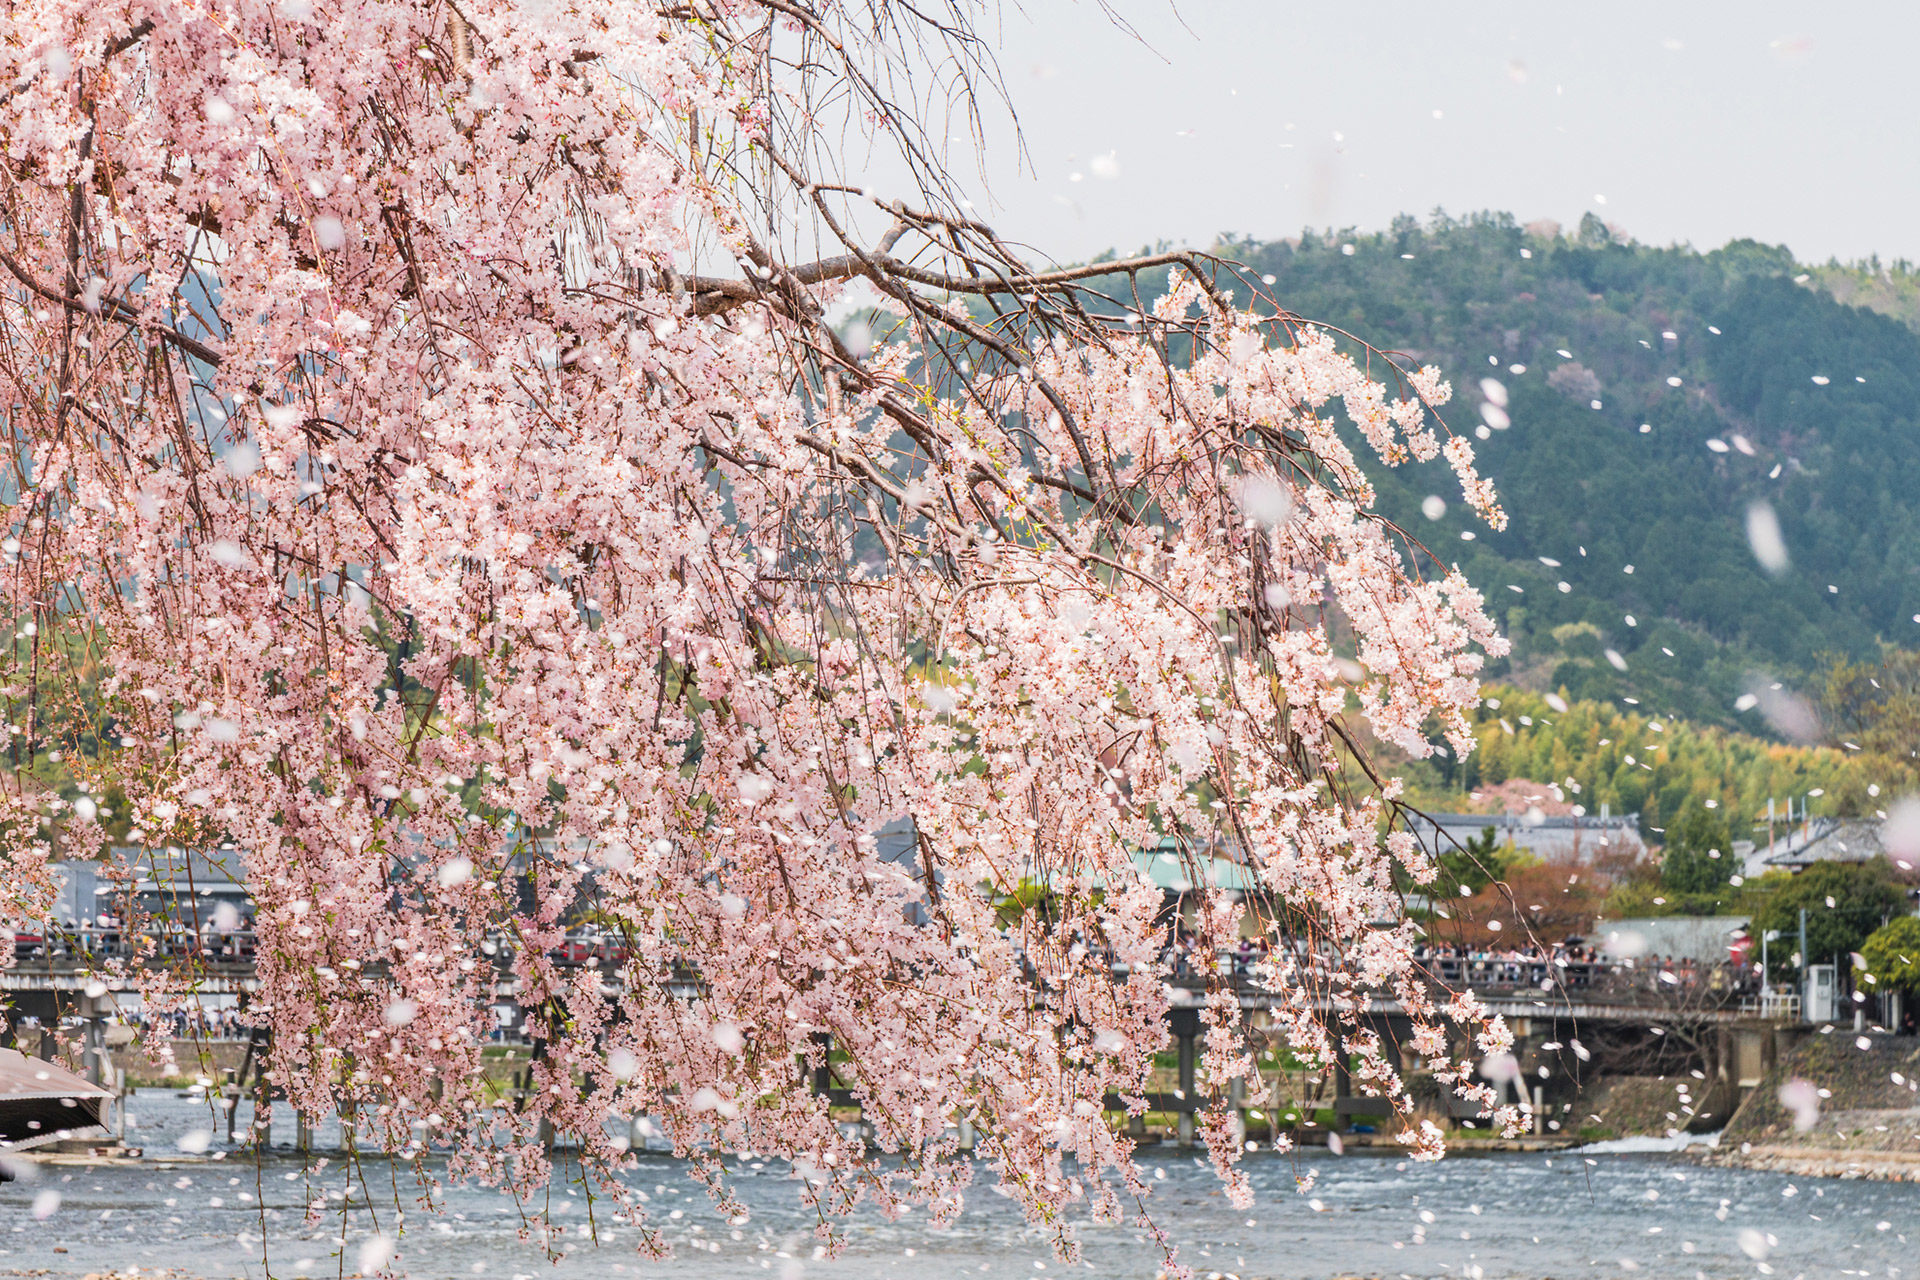 京都-散り桜-イメージ